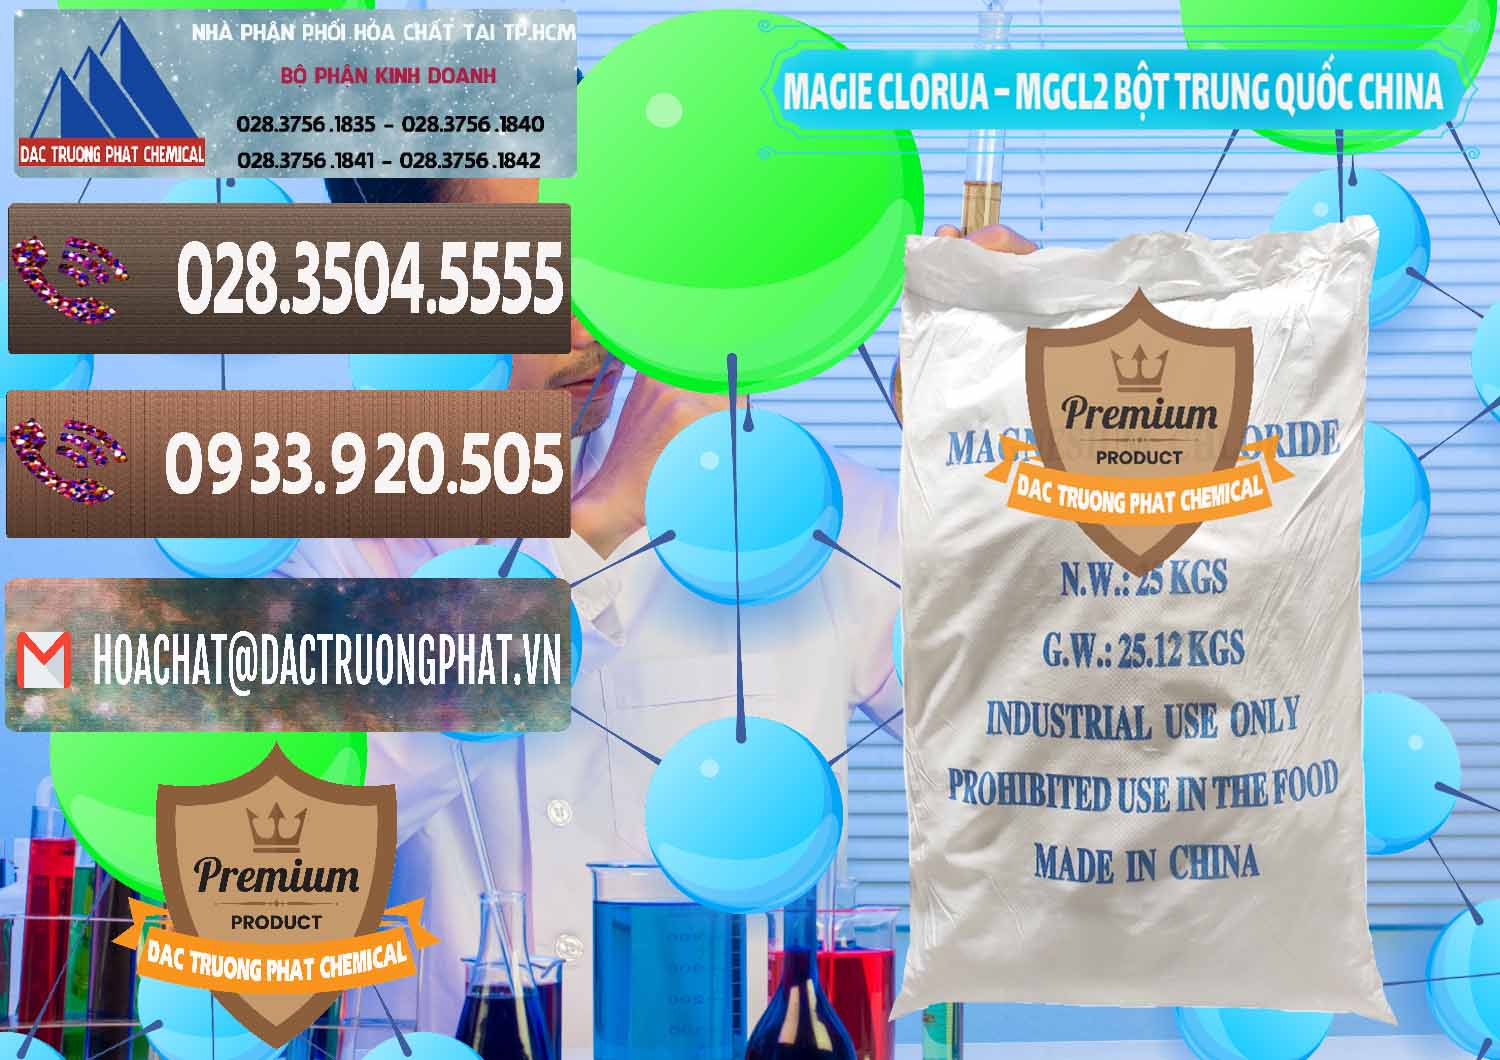 Nơi chuyên cung cấp ( bán ) Magie Clorua – MGCL2 96% Dạng Bột Bao Chữ Xanh Trung Quốc China - 0207 - Công ty nhập khẩu và phân phối hóa chất tại TP.HCM - hoachatviet.net